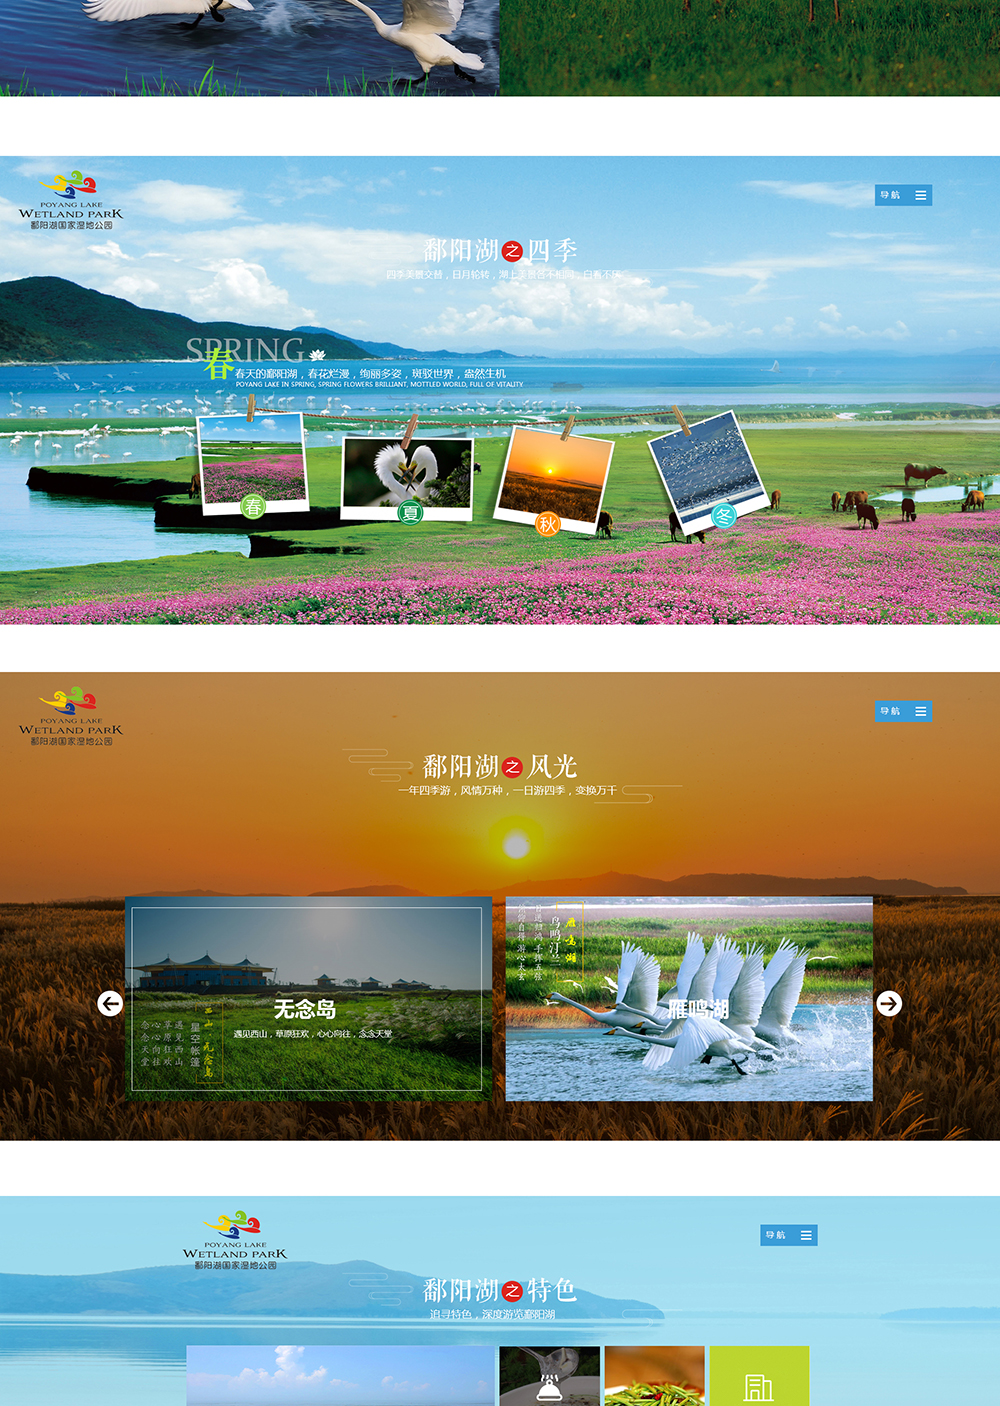 江西鄱陽湖濕地公園旅游開發有限公司_02.jpg